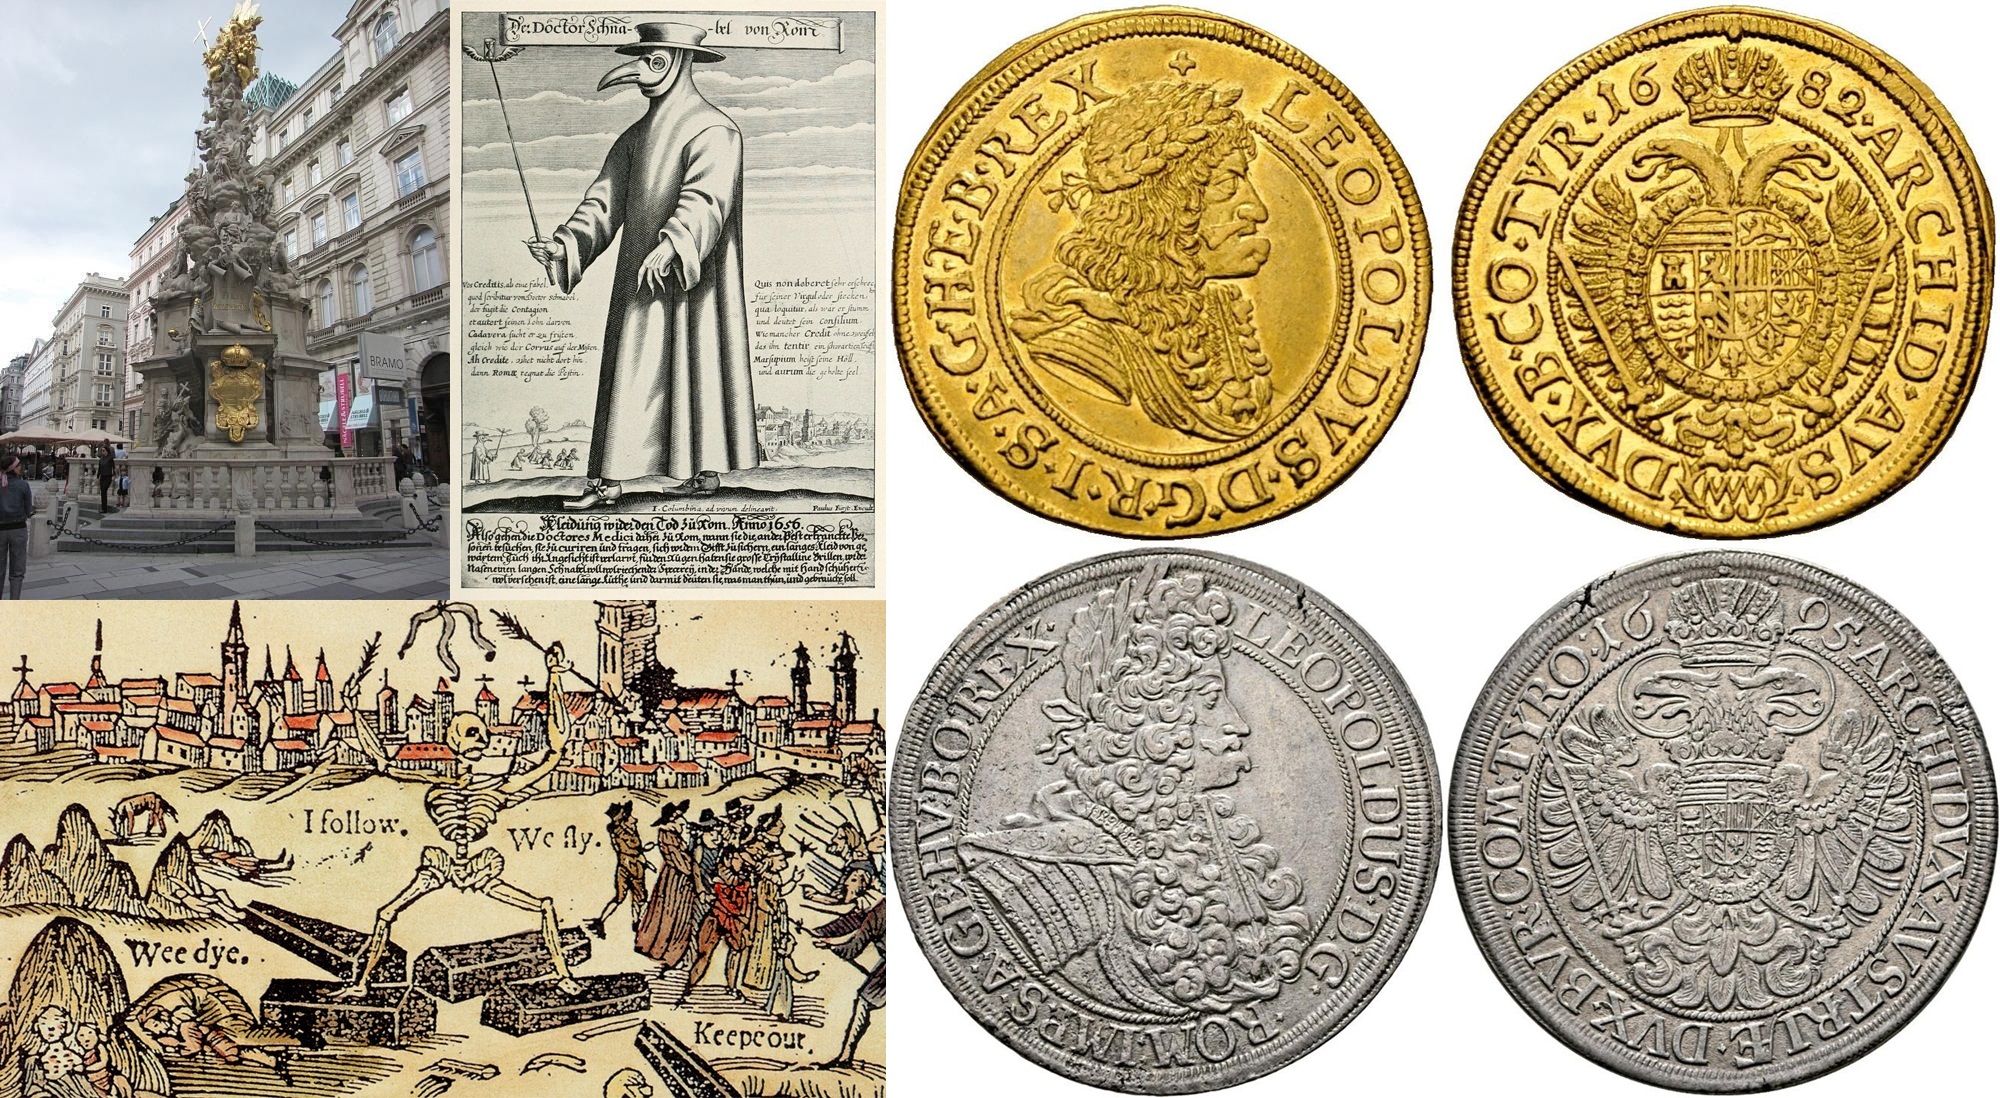 A pénzverde, ahol mindenki túlélte a pestis járványt! Matthias Mittermayer von Waffenberg legendája ( Bécs, 1679 )